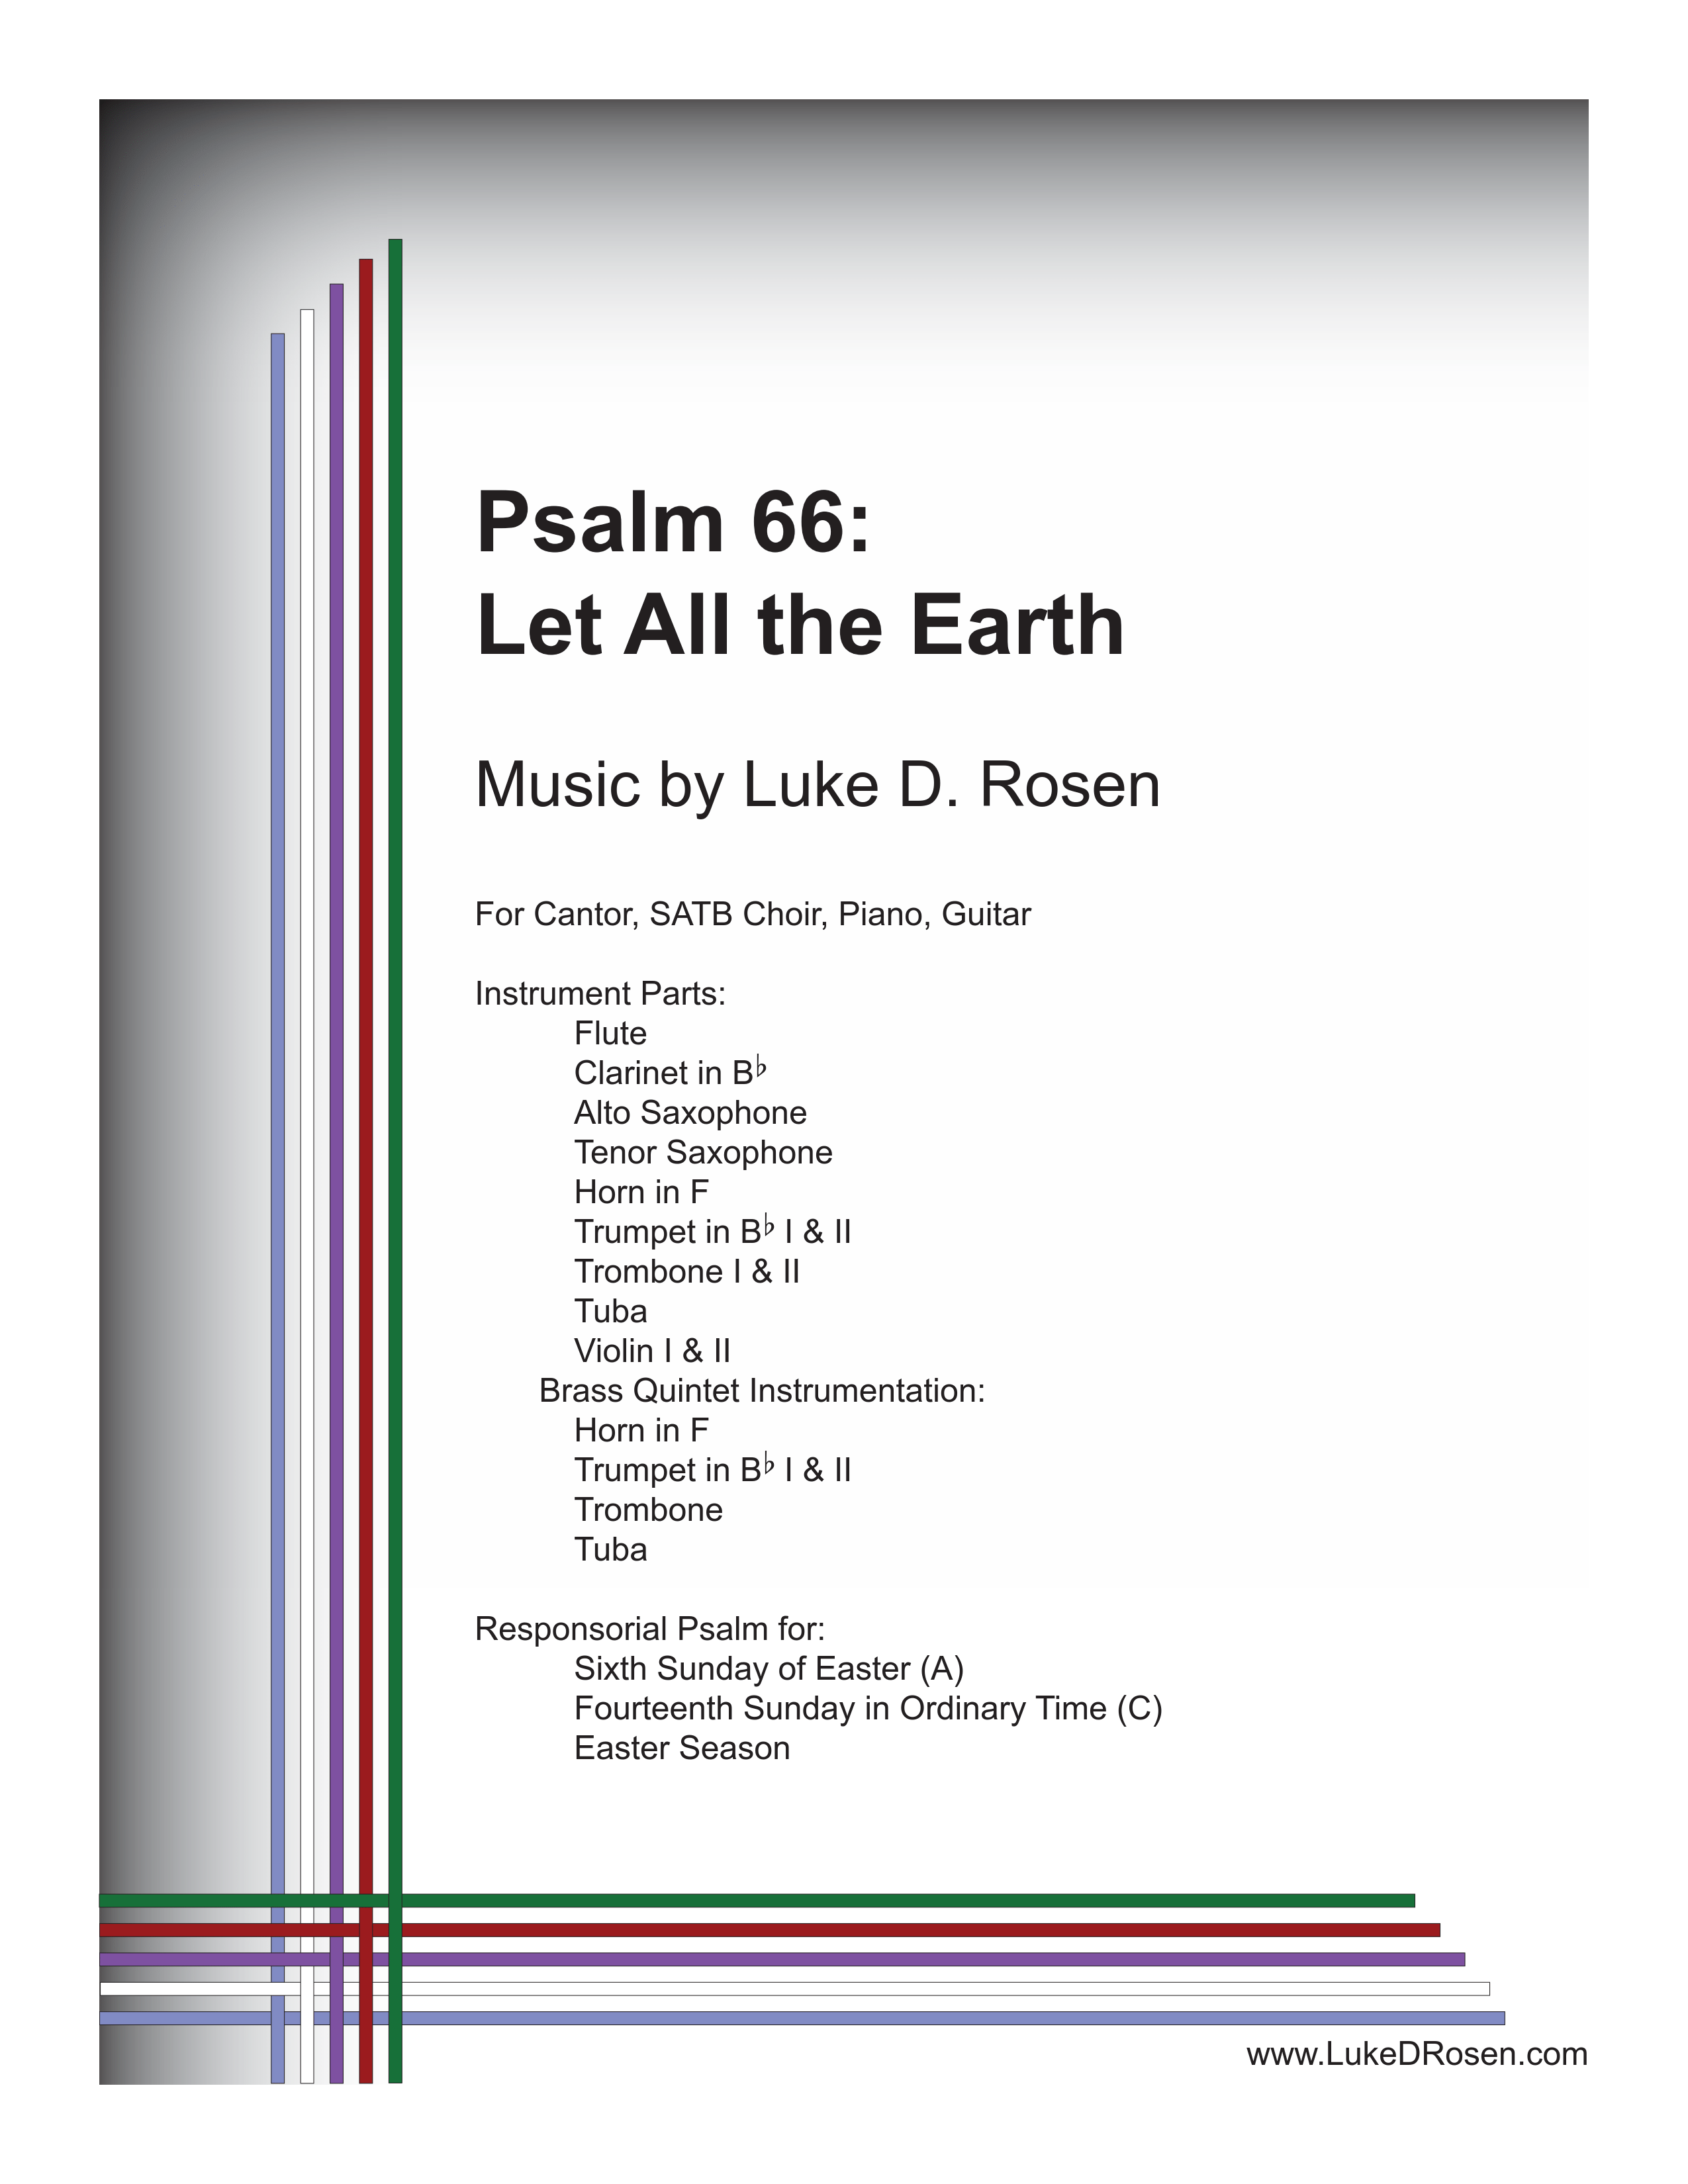 Psalm 66 – Let All the Earth (Rosen)